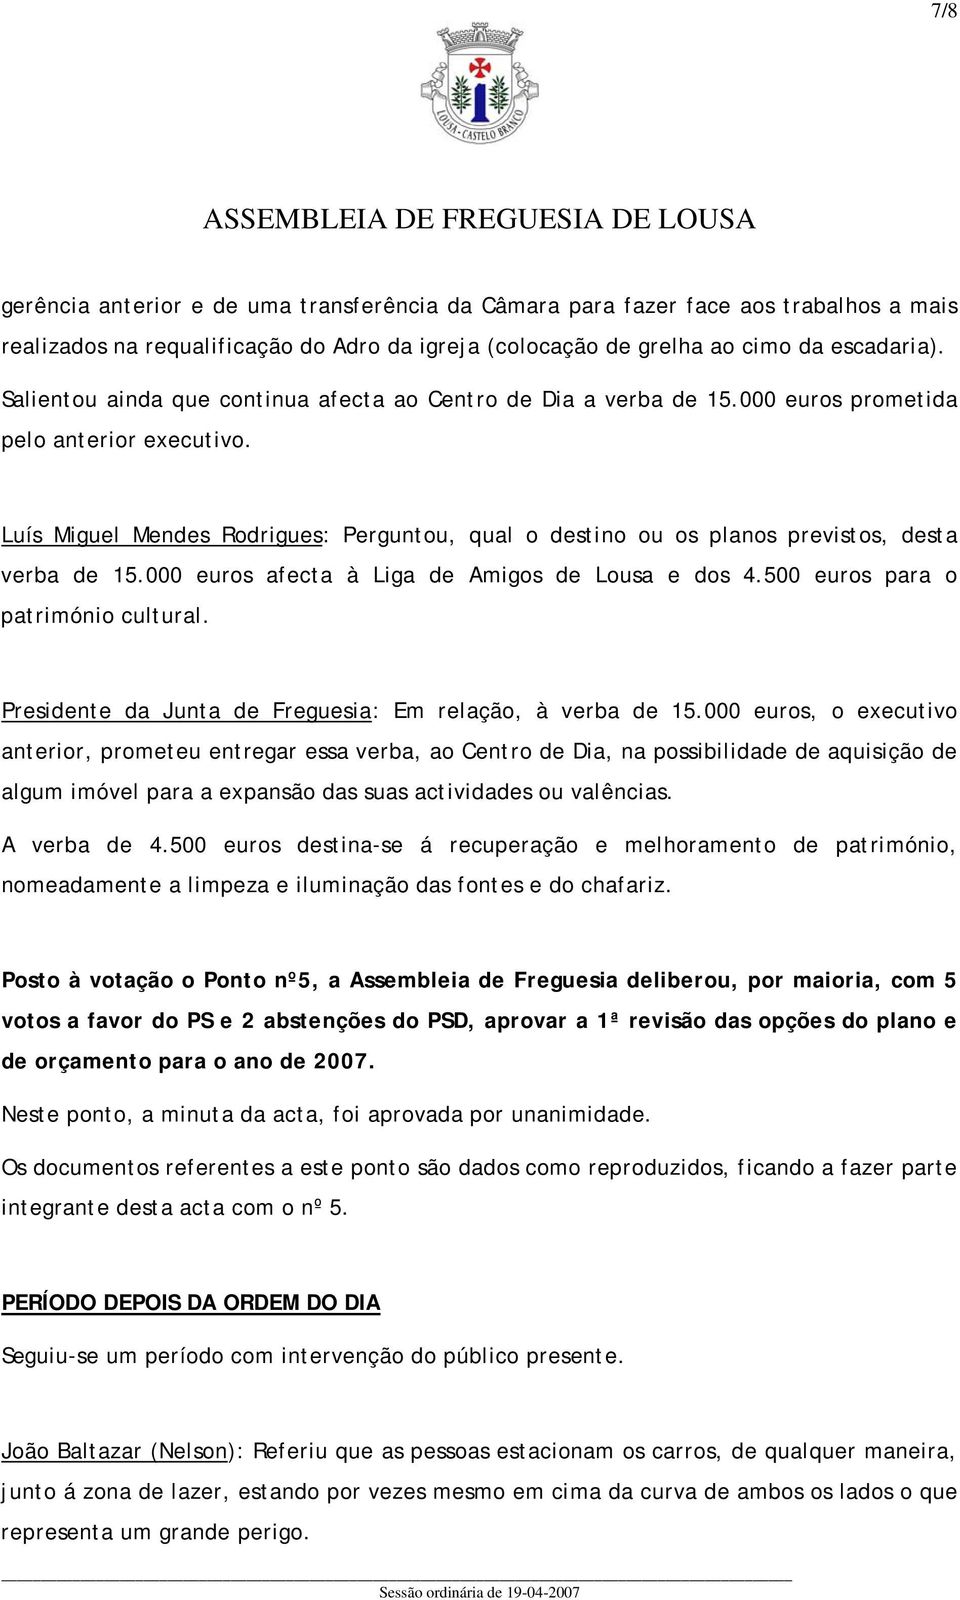 Luís Miguel Mendes Rodrigues: Perguntou, qual o destino ou os planos previstos, desta verba de 15.000 euros afecta à Liga de Amigos de Lousa e dos 4.500 euros para o património cultural.